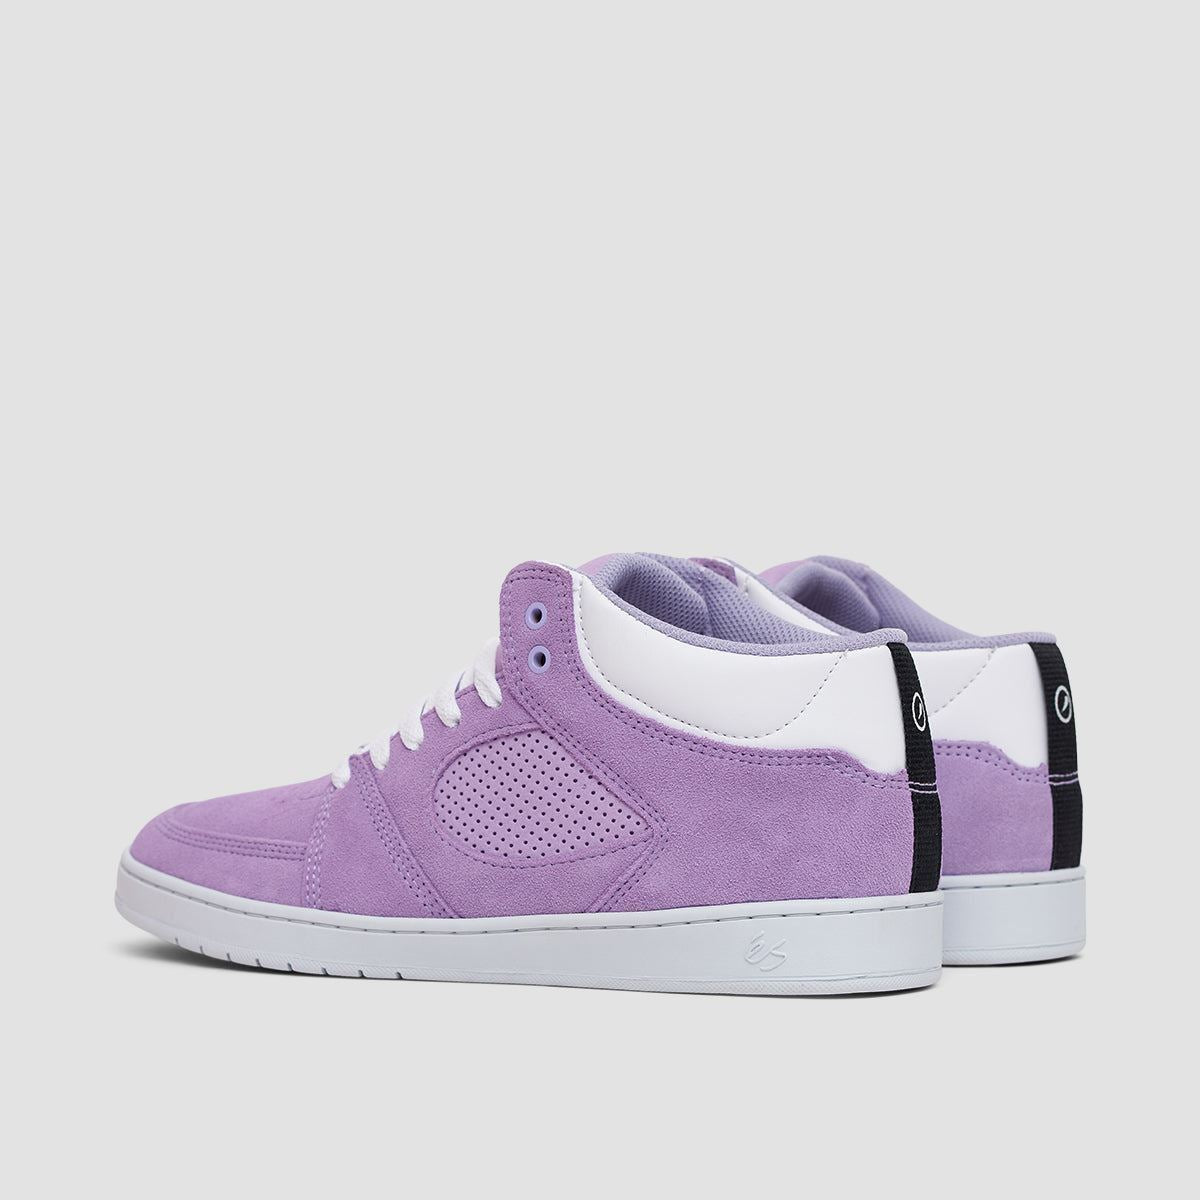 eS Accel Slim Mid Shoes - Lavender